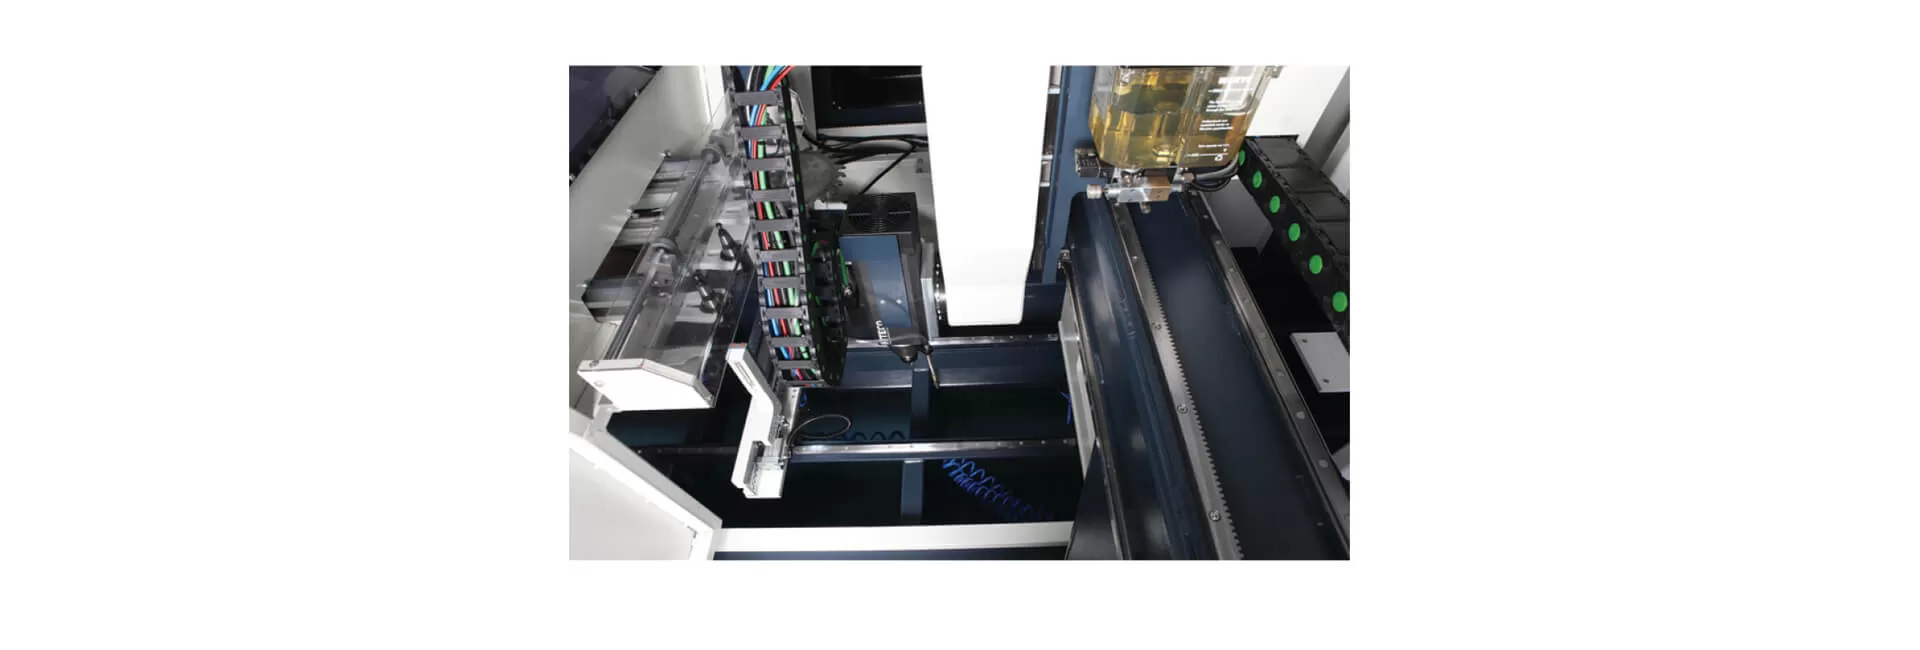 INO XP 8000 Centro de Mecanizado de Perfiles CNC de 4 Ejes